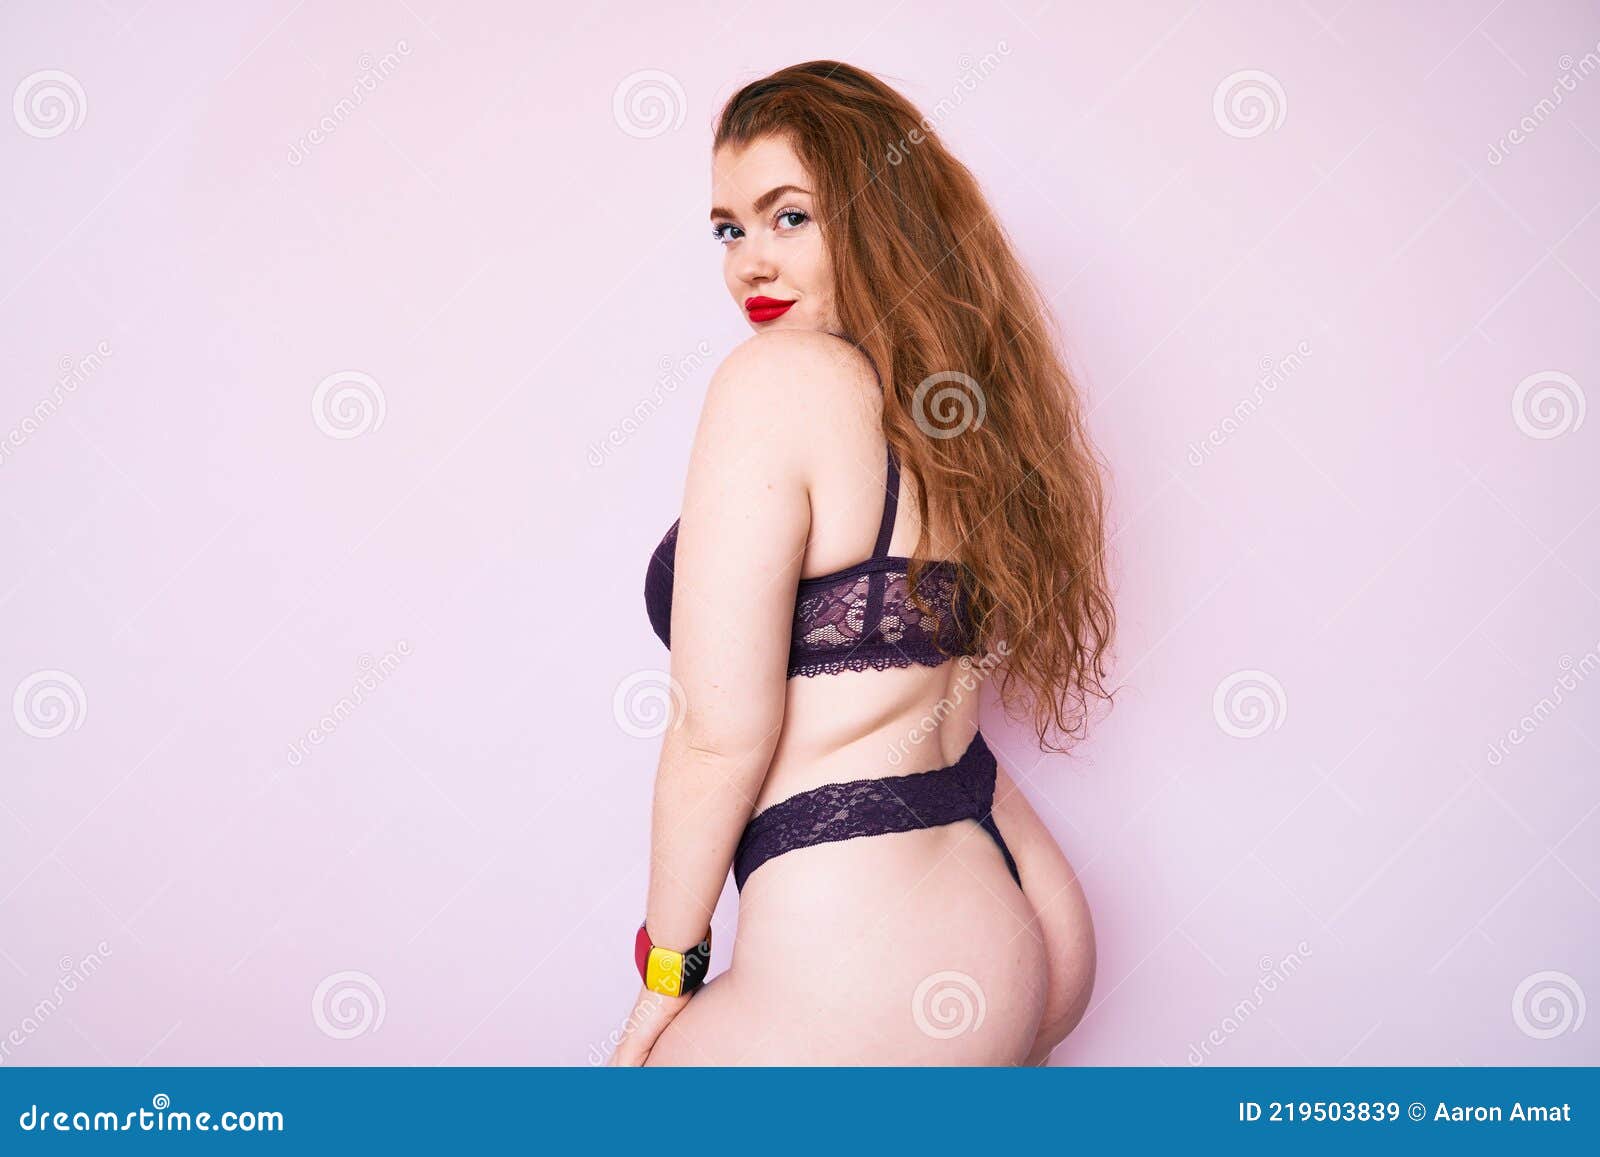 big ass redhead selfie sex photo